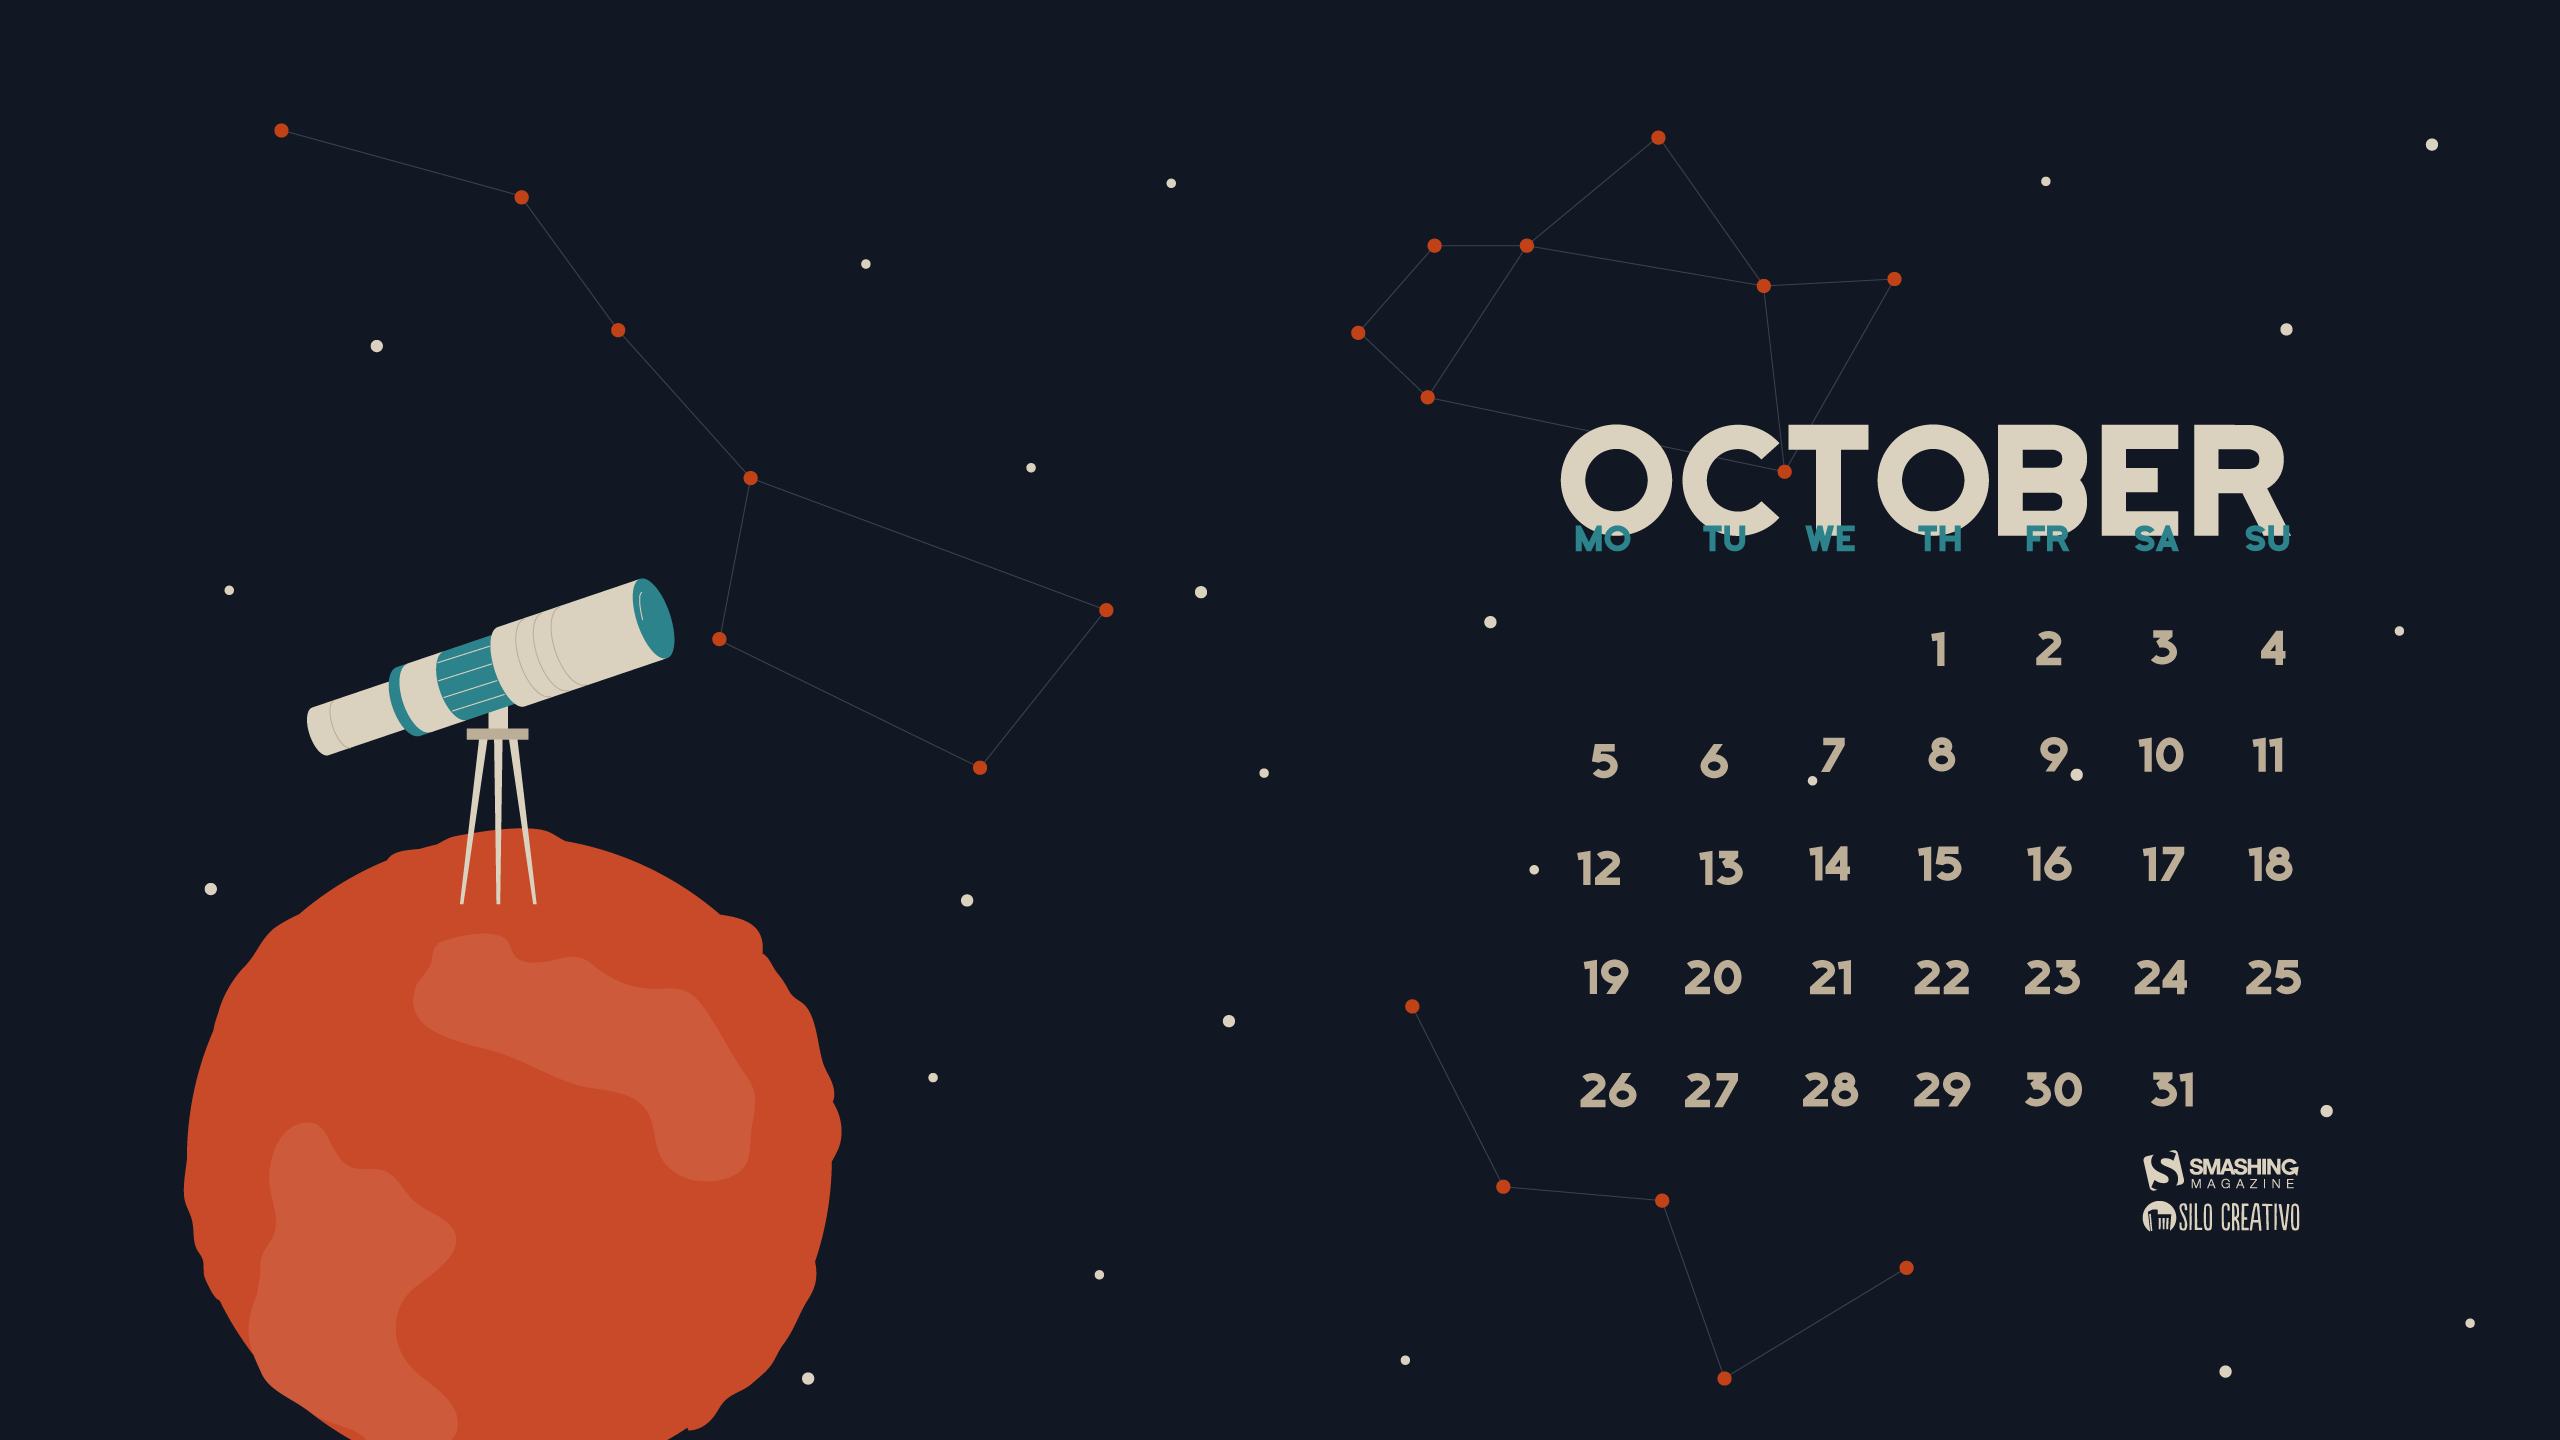 Desktop Wallpapers Calendars: October 2015